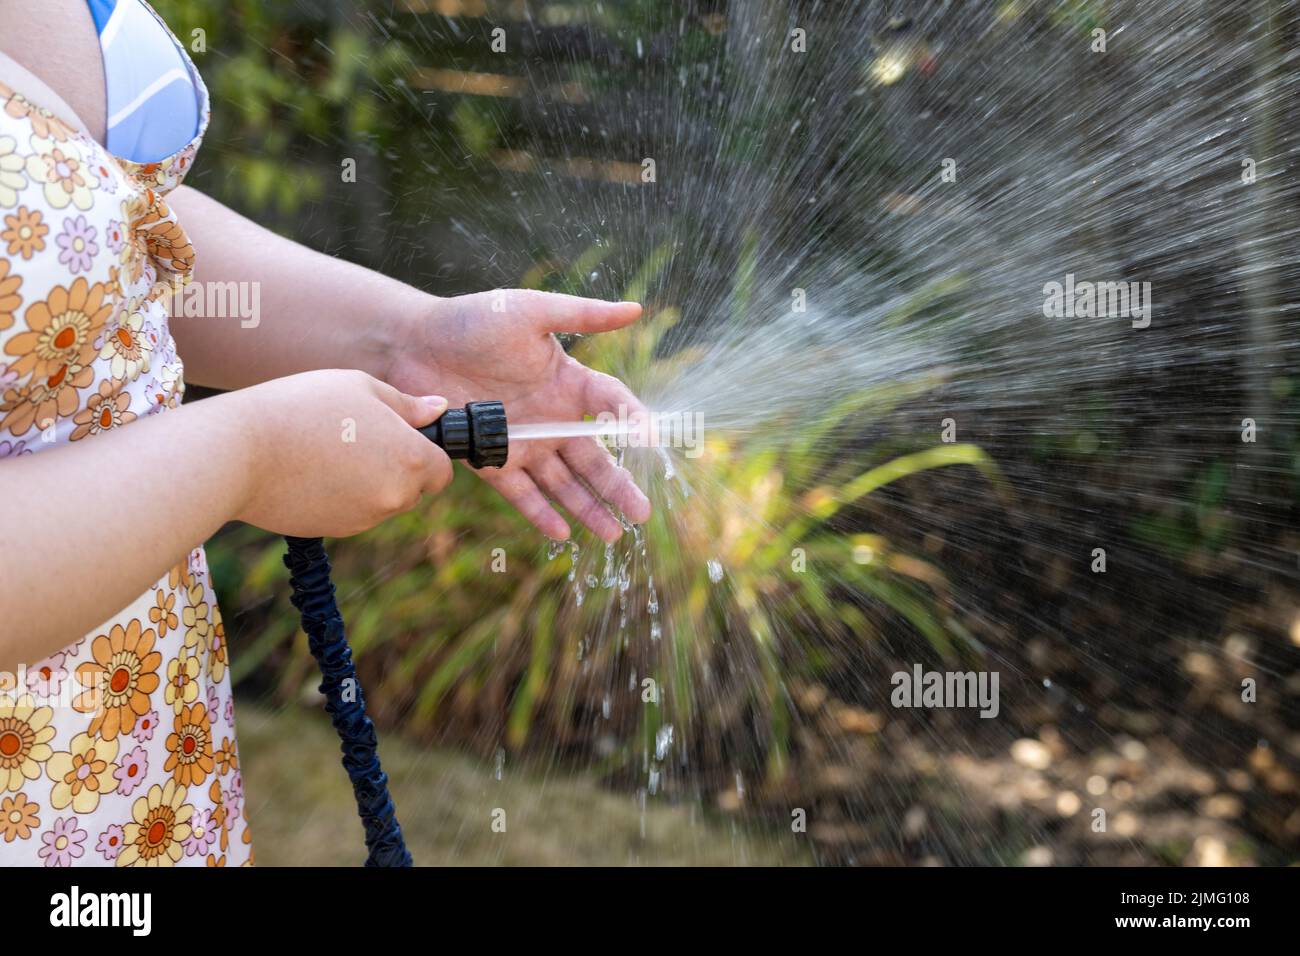 La jeune femme a un jardin d'eaux avec un tuyau flexible avant l'entrée en vigueur de l'interdiction du tuyau flexible en raison de la pénurie d'eau par la sécheresse et de la mauvaise pluviométrie. Banque D'Images